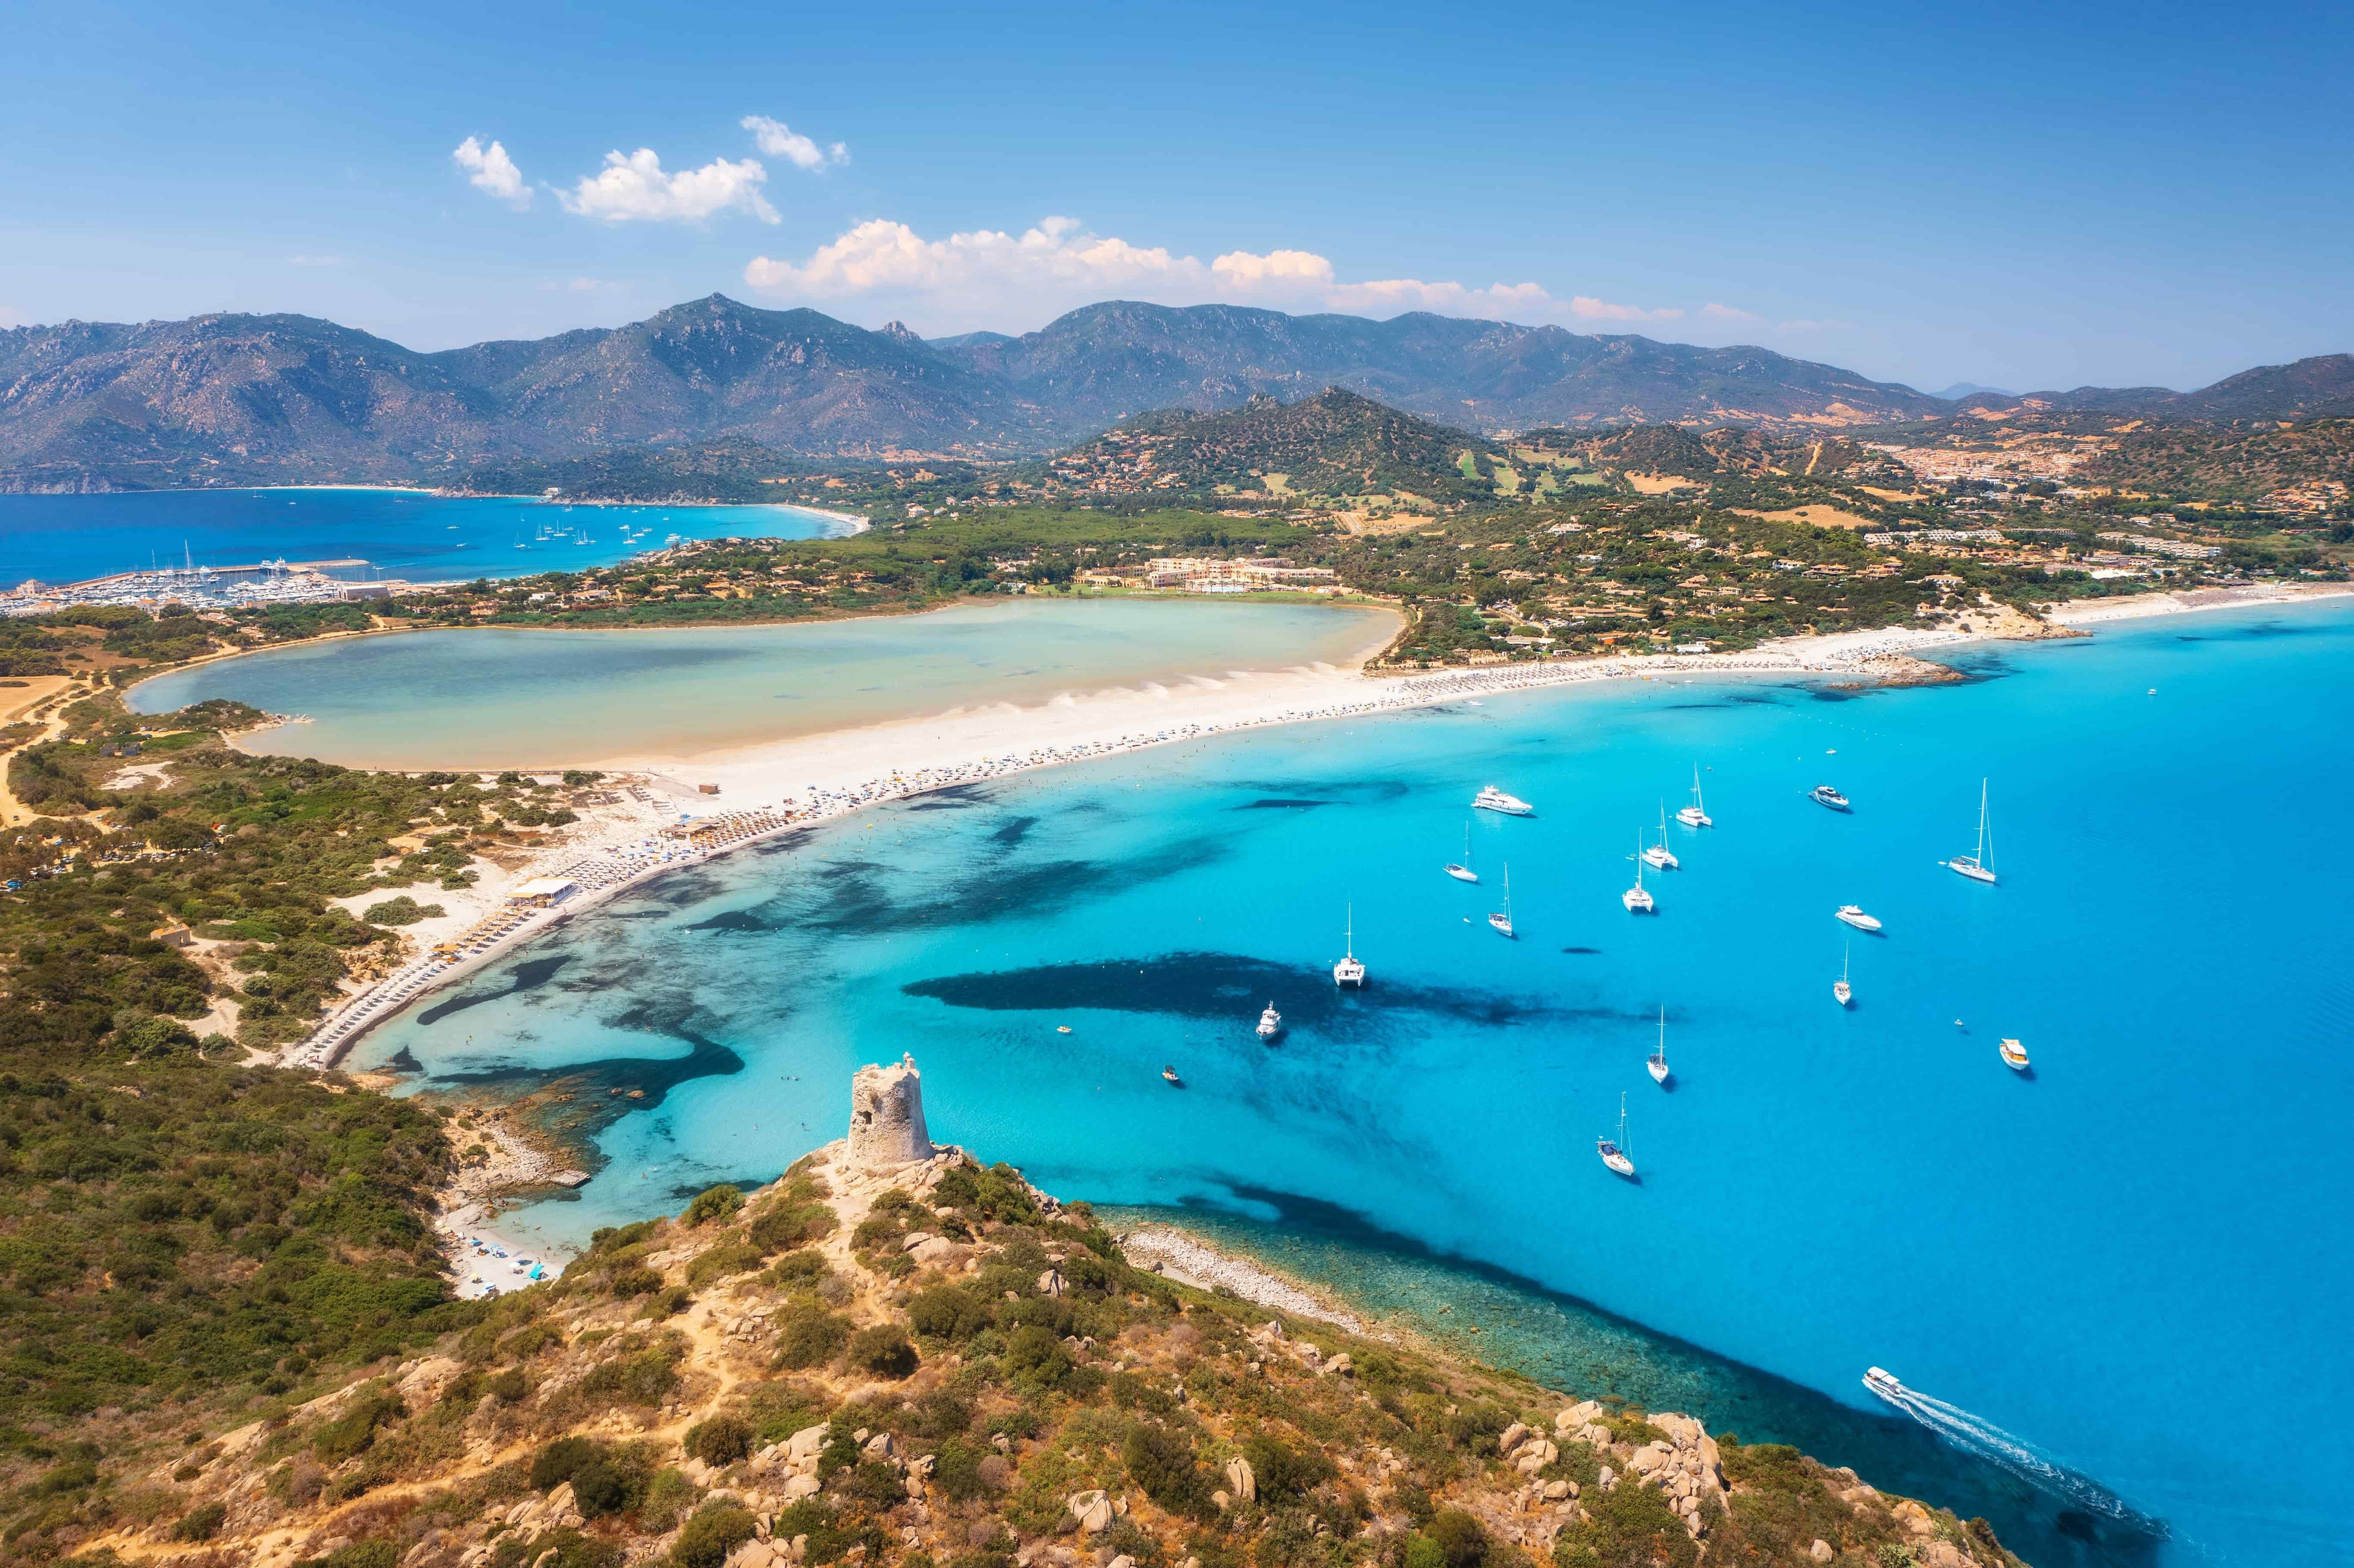 Laissez-vous séduire par les innombrables charmes de la Sardaigne, dont son littoral époustouflant, ses plages de sable blanc, ses sites archéologiques antiques et ses villages tranquilles. La Sardaigne est non seulement la deuxième île d’Italie par sa superficie, mais elle abrite également la célèbre Costa Smeralda, le site du patrimoine mondial de l’UNESCO connu sous le nom de <a href="https://whc.unesco.org/fr/list/833/" rel="noreferrer noopener">Su Nuraxi di Barumini</a> et une grotte vieille de deux millions d’années à Capo Caccia. De plus, l’île a également été identifiée comme une <a href="https://sardinias.fr/guide/sardaigne-zone-bleue-longevite" rel="noreferrer noopener">région des zones bleues</a>, soit une région réputée pour la santé et la longévité de ses habitants grâce à leur régime alimentaire, leurs habitudes de travail et leurs traditions.